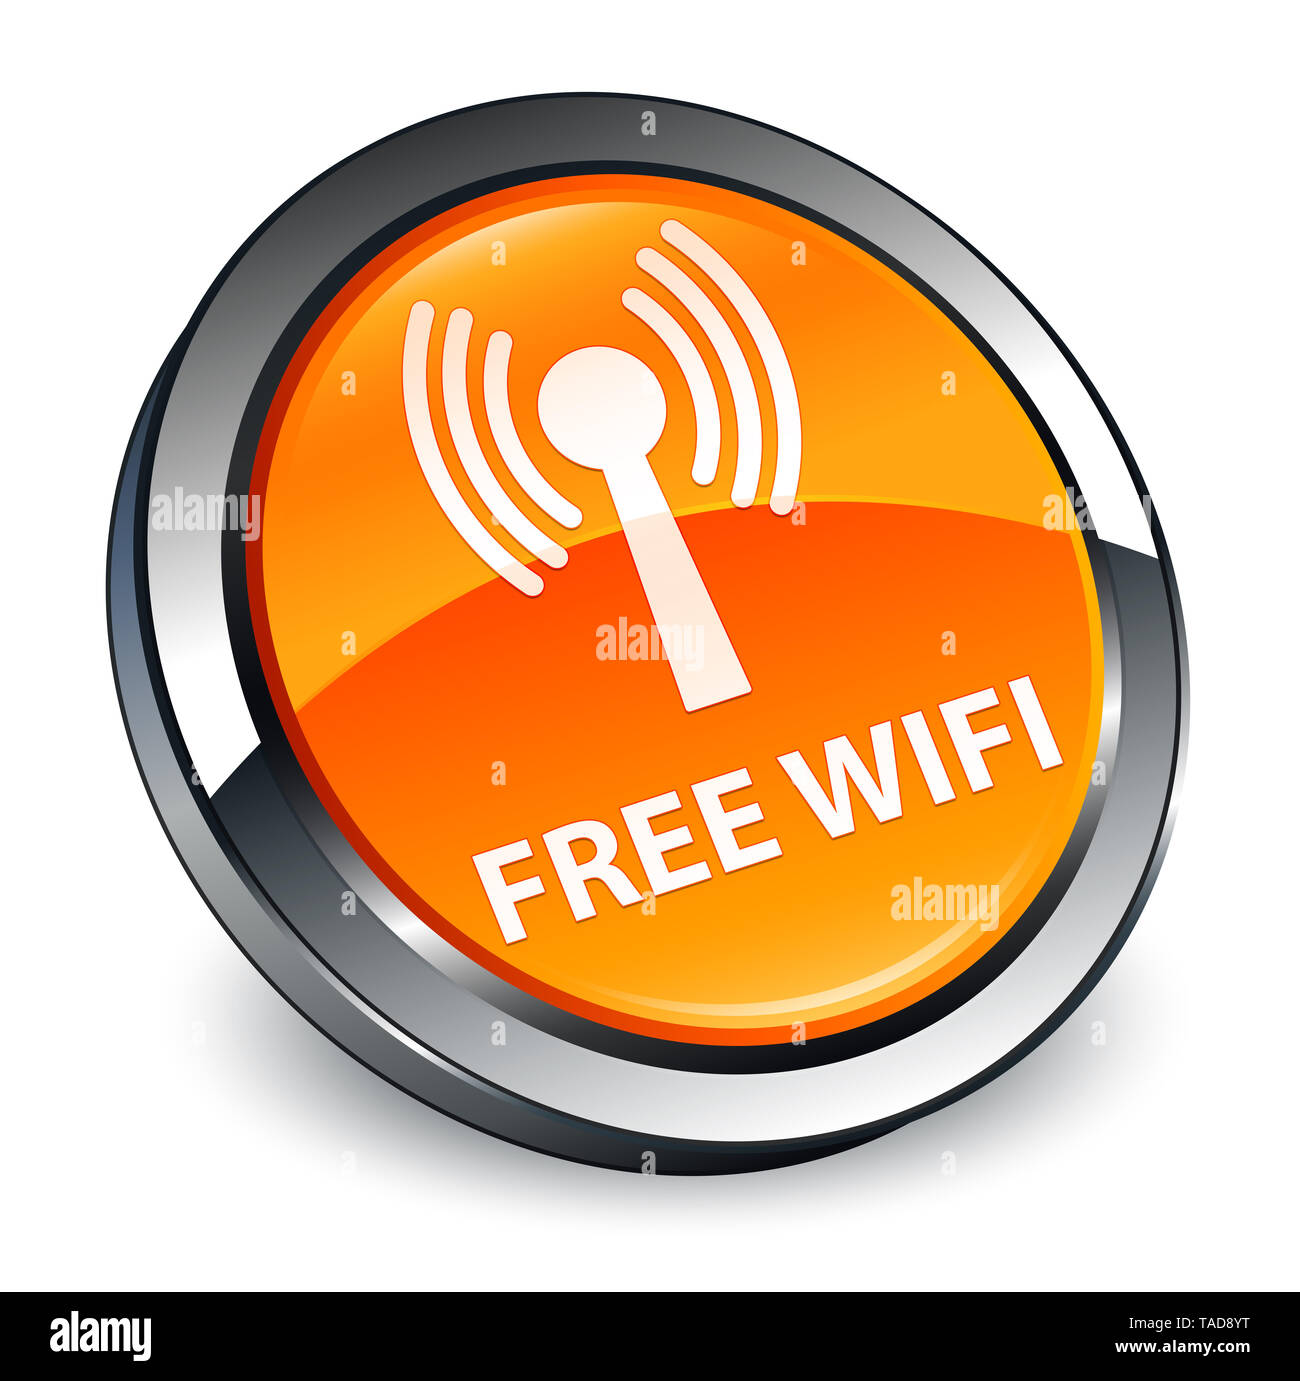 Free wifi (wlan) réseau isolé sur bouton rond orange 3d abstract illustration Banque D'Images